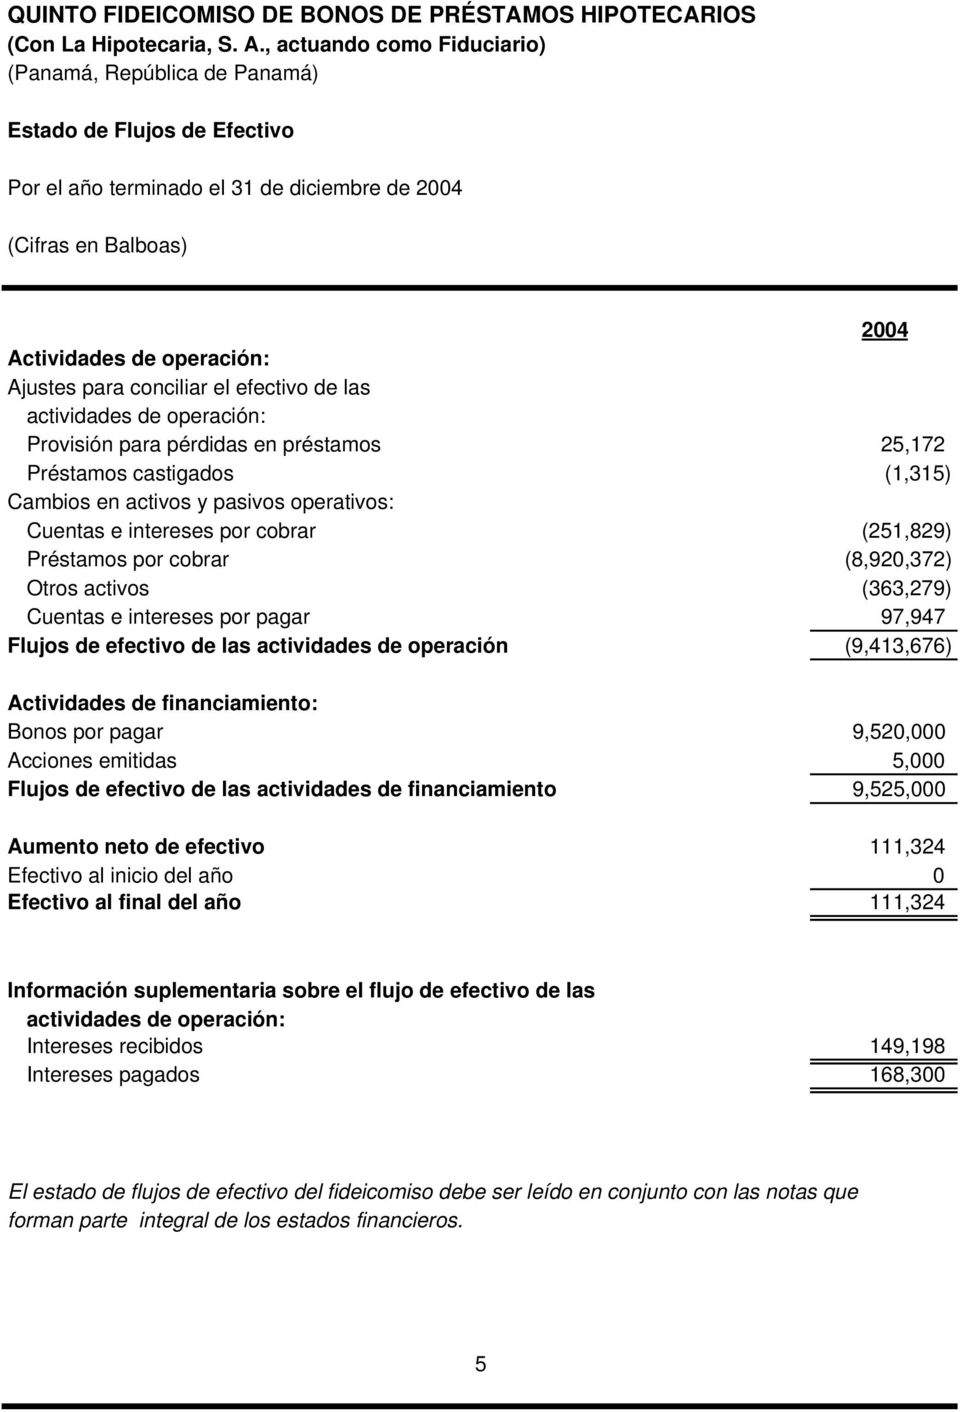 activos (363,279) Cuentas e intereses por pagar 97,947 Flujos de efectivo de las actividades de operación (9,413,676) Actividades de financiamiento: Bonos por pagar 9,520,000 Acciones emitidas 5,000